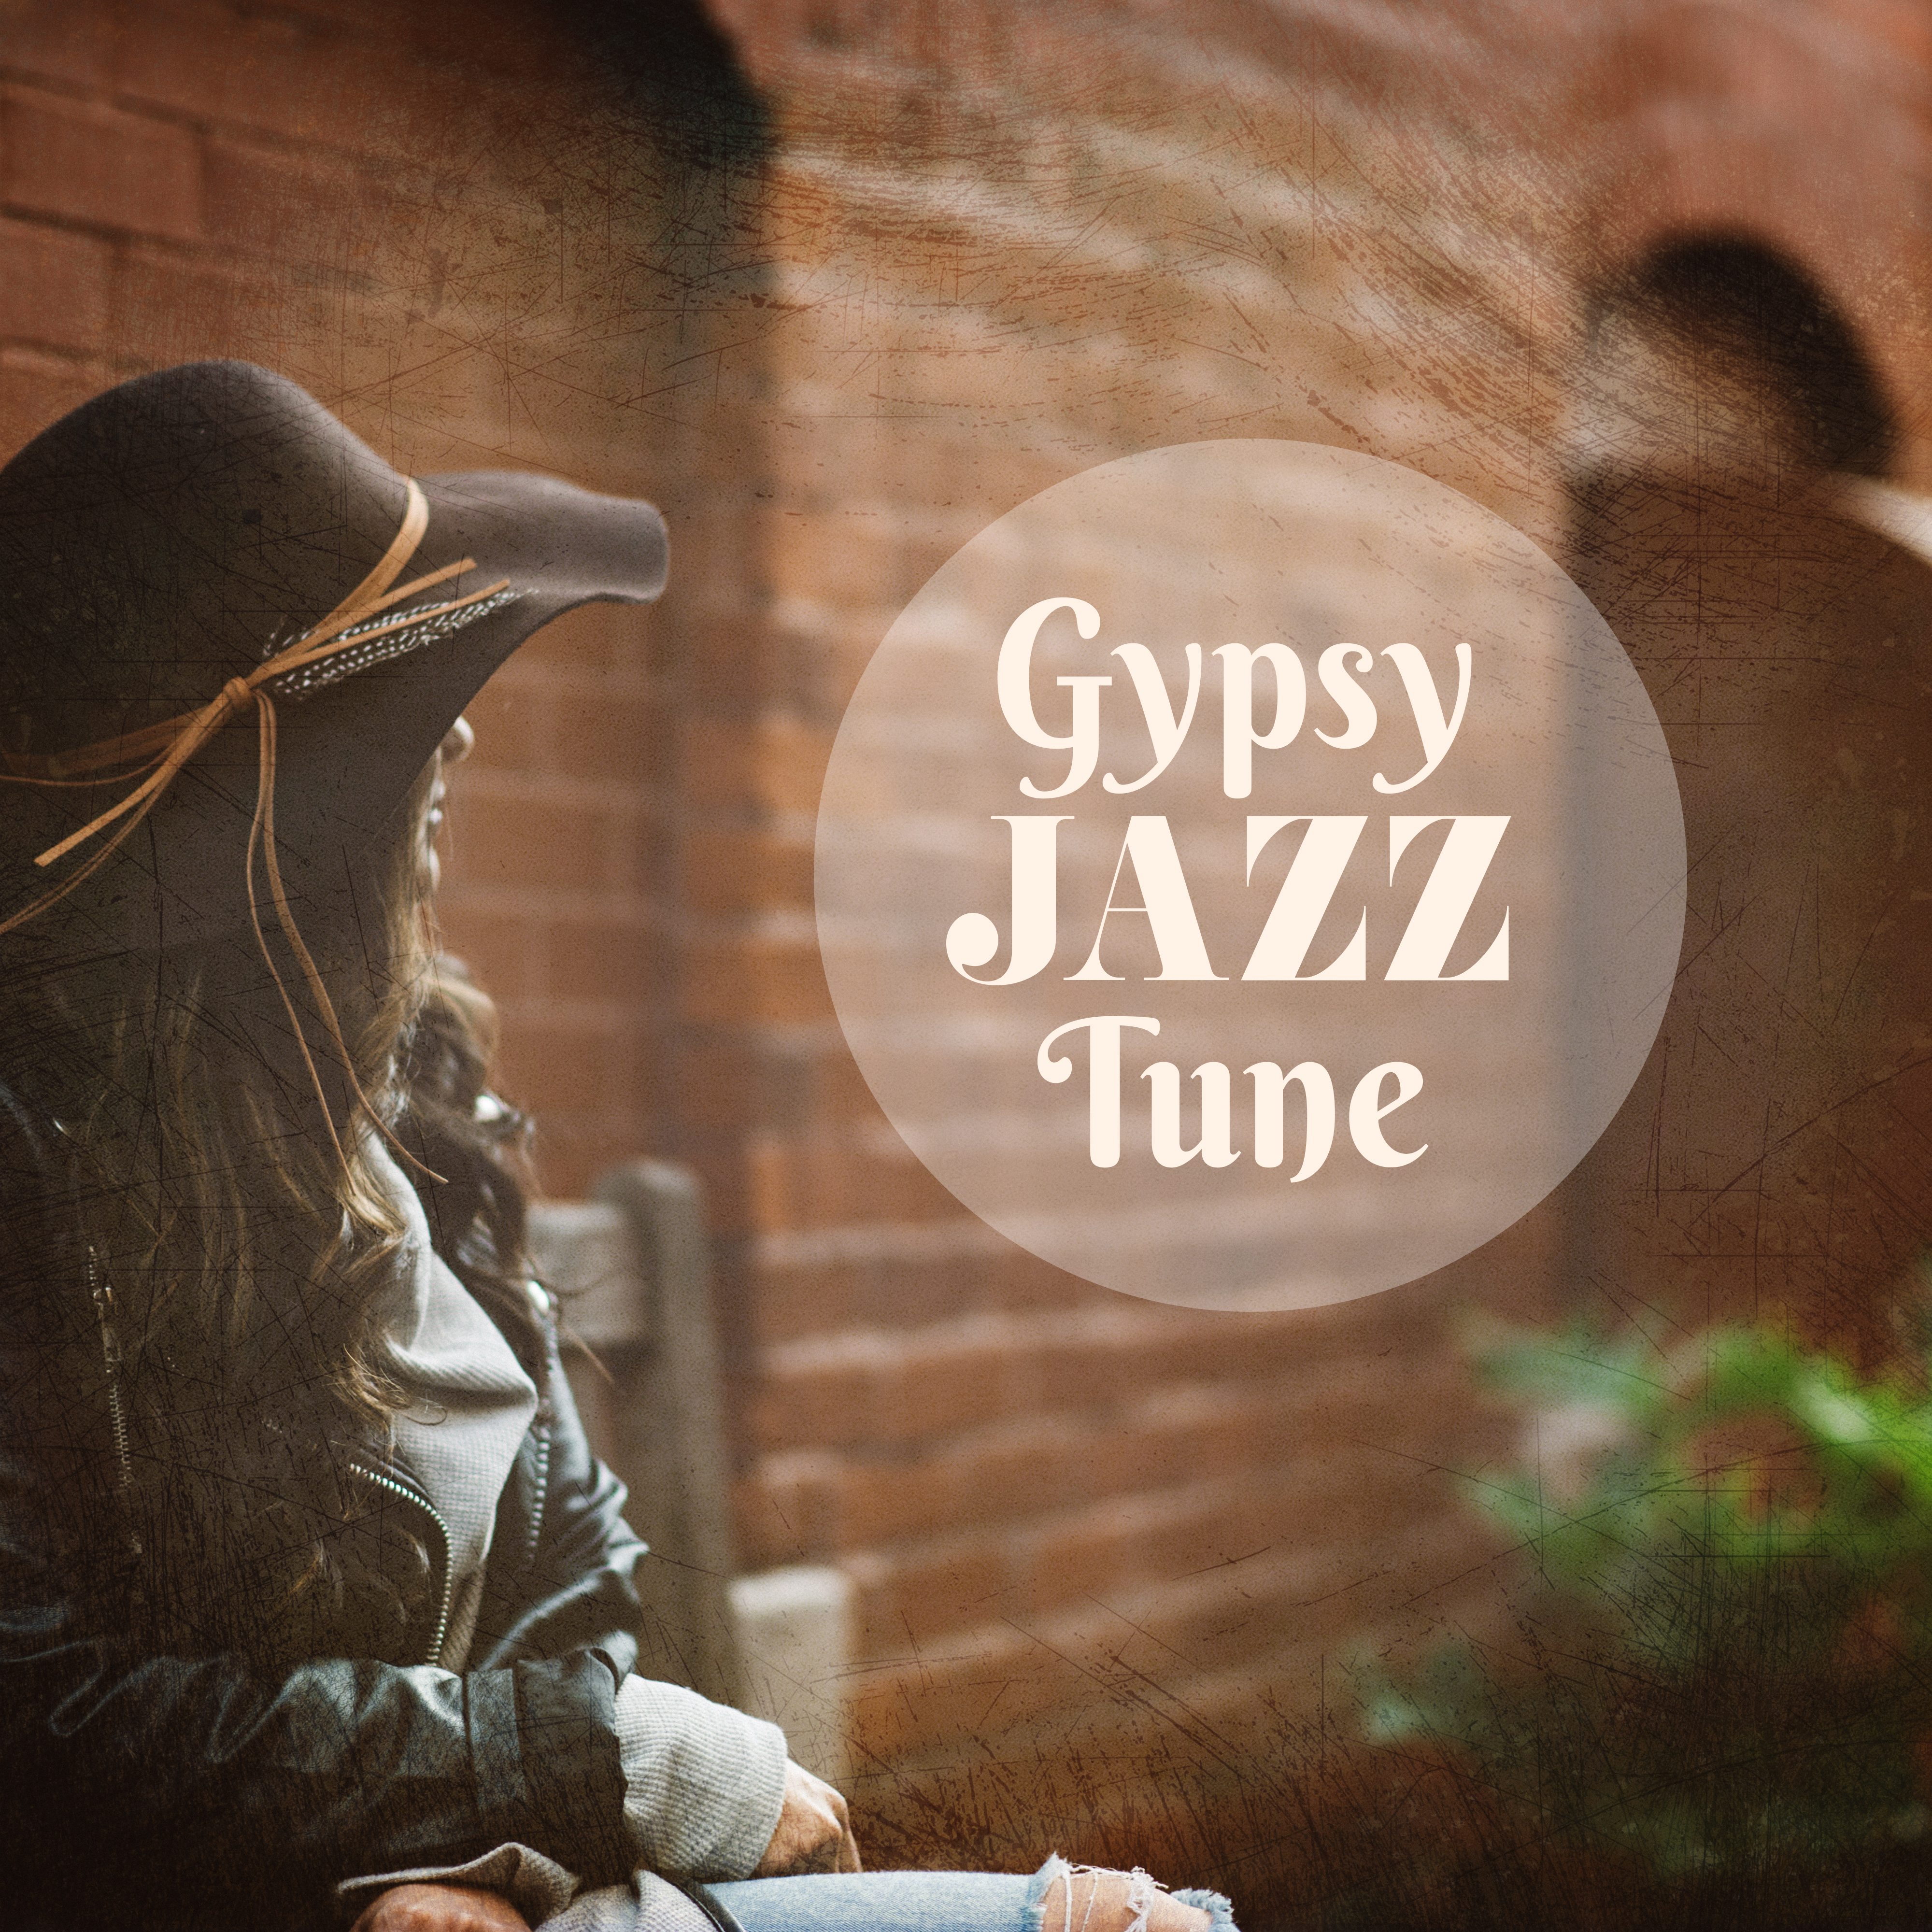 Gypsy Jazz Tune